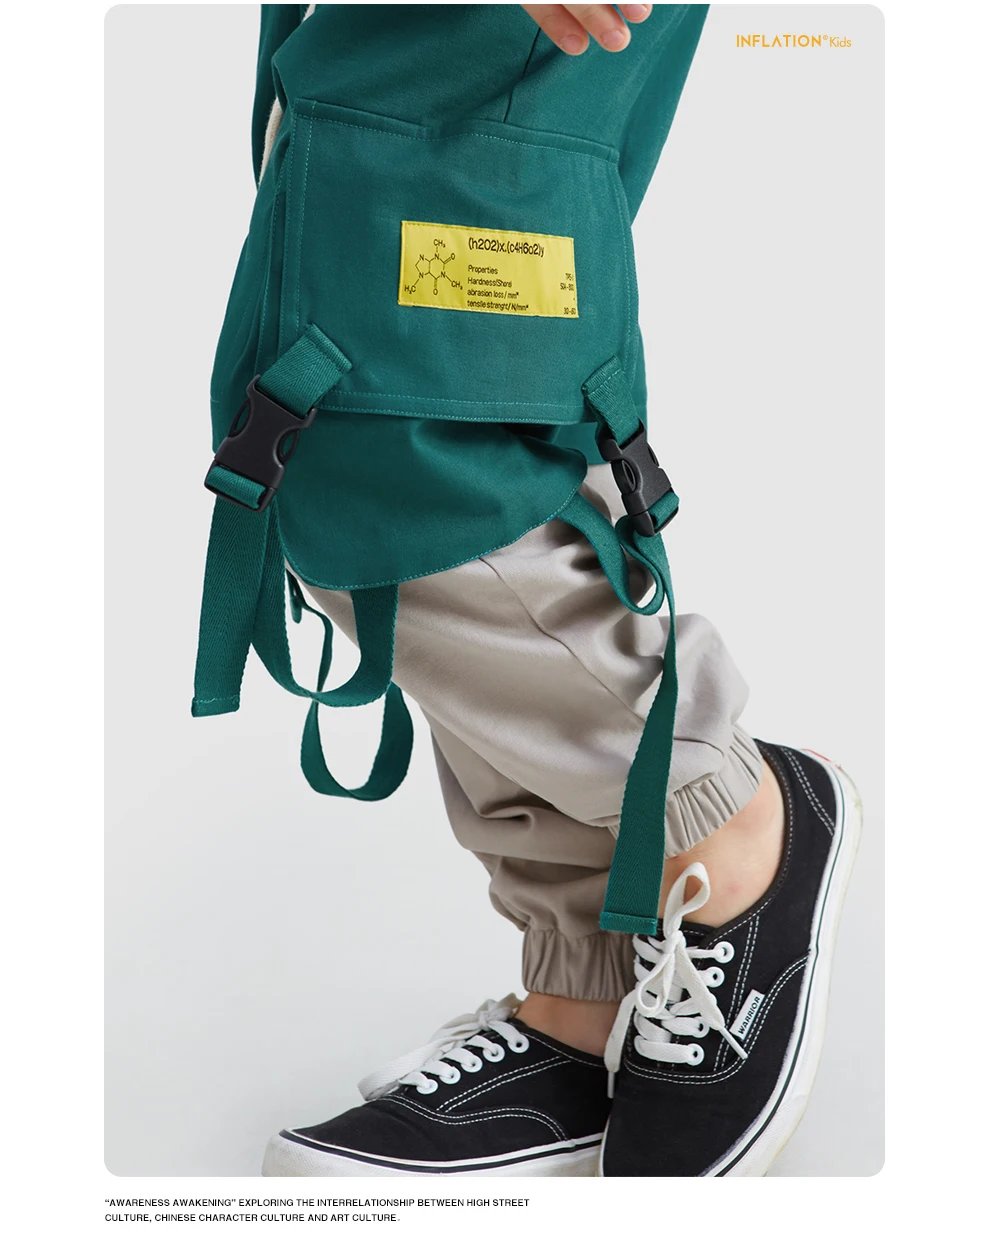 Г. Детские штаны для бега для мальчиков, Детские хлопковые штаны для бега детские штаны цветные штаны для бега с эластичной резинкой на талии, штаны для мальчиков, 19935A